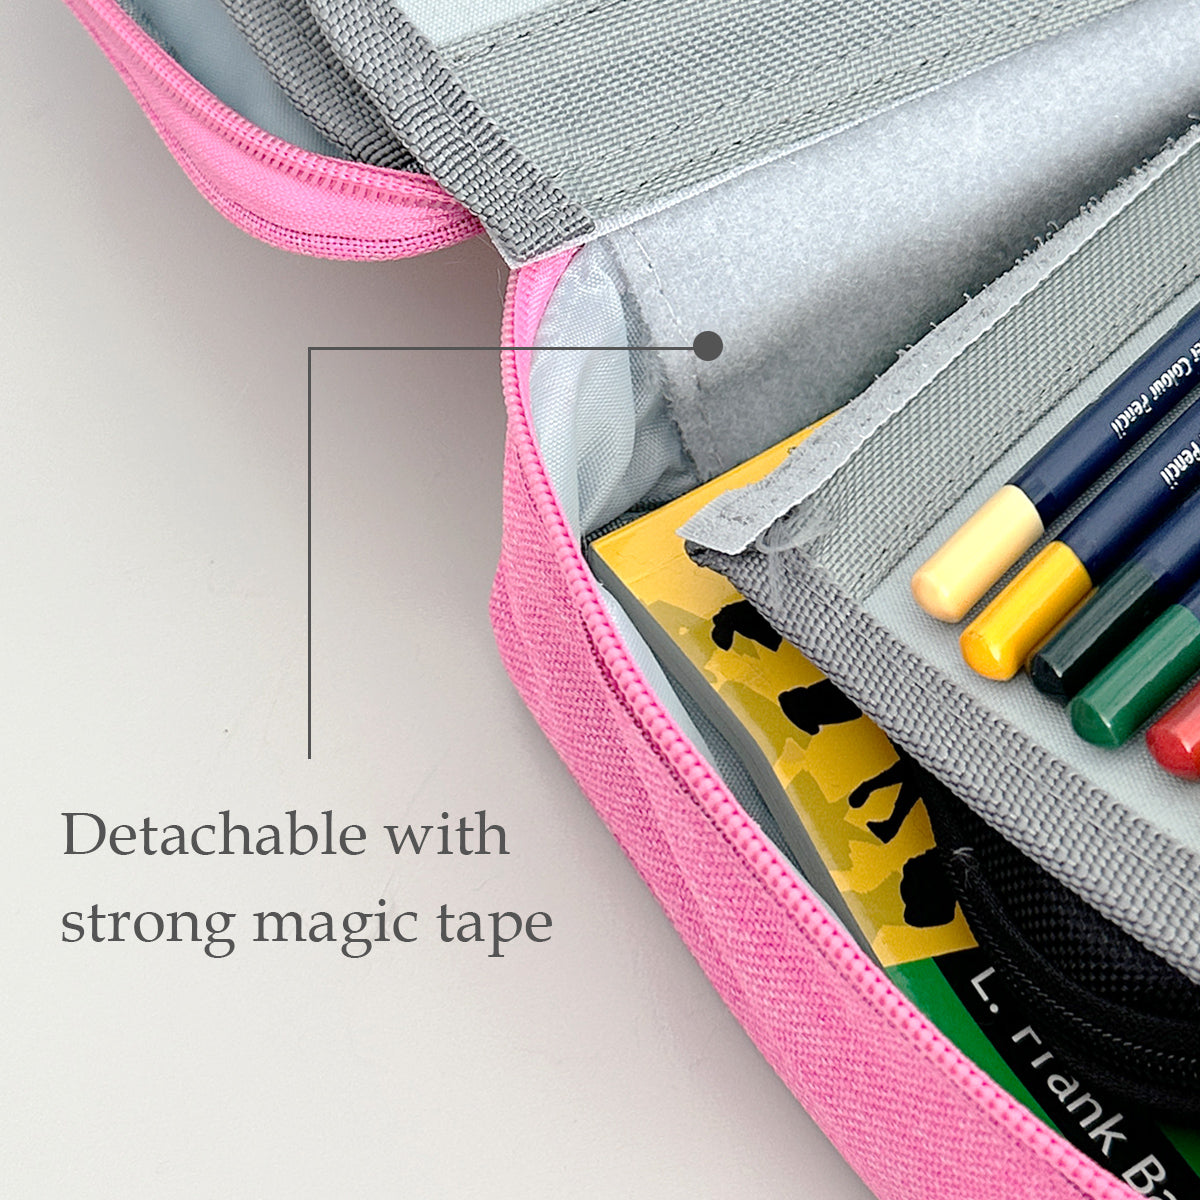 STOBOK 72 Colored Pencils with Case Pencil Pouch Slot Colored Drawing  Pencils Artist Pencil Case Colored Pencil Wrap Pen Pencil Storage Bag for  Pen